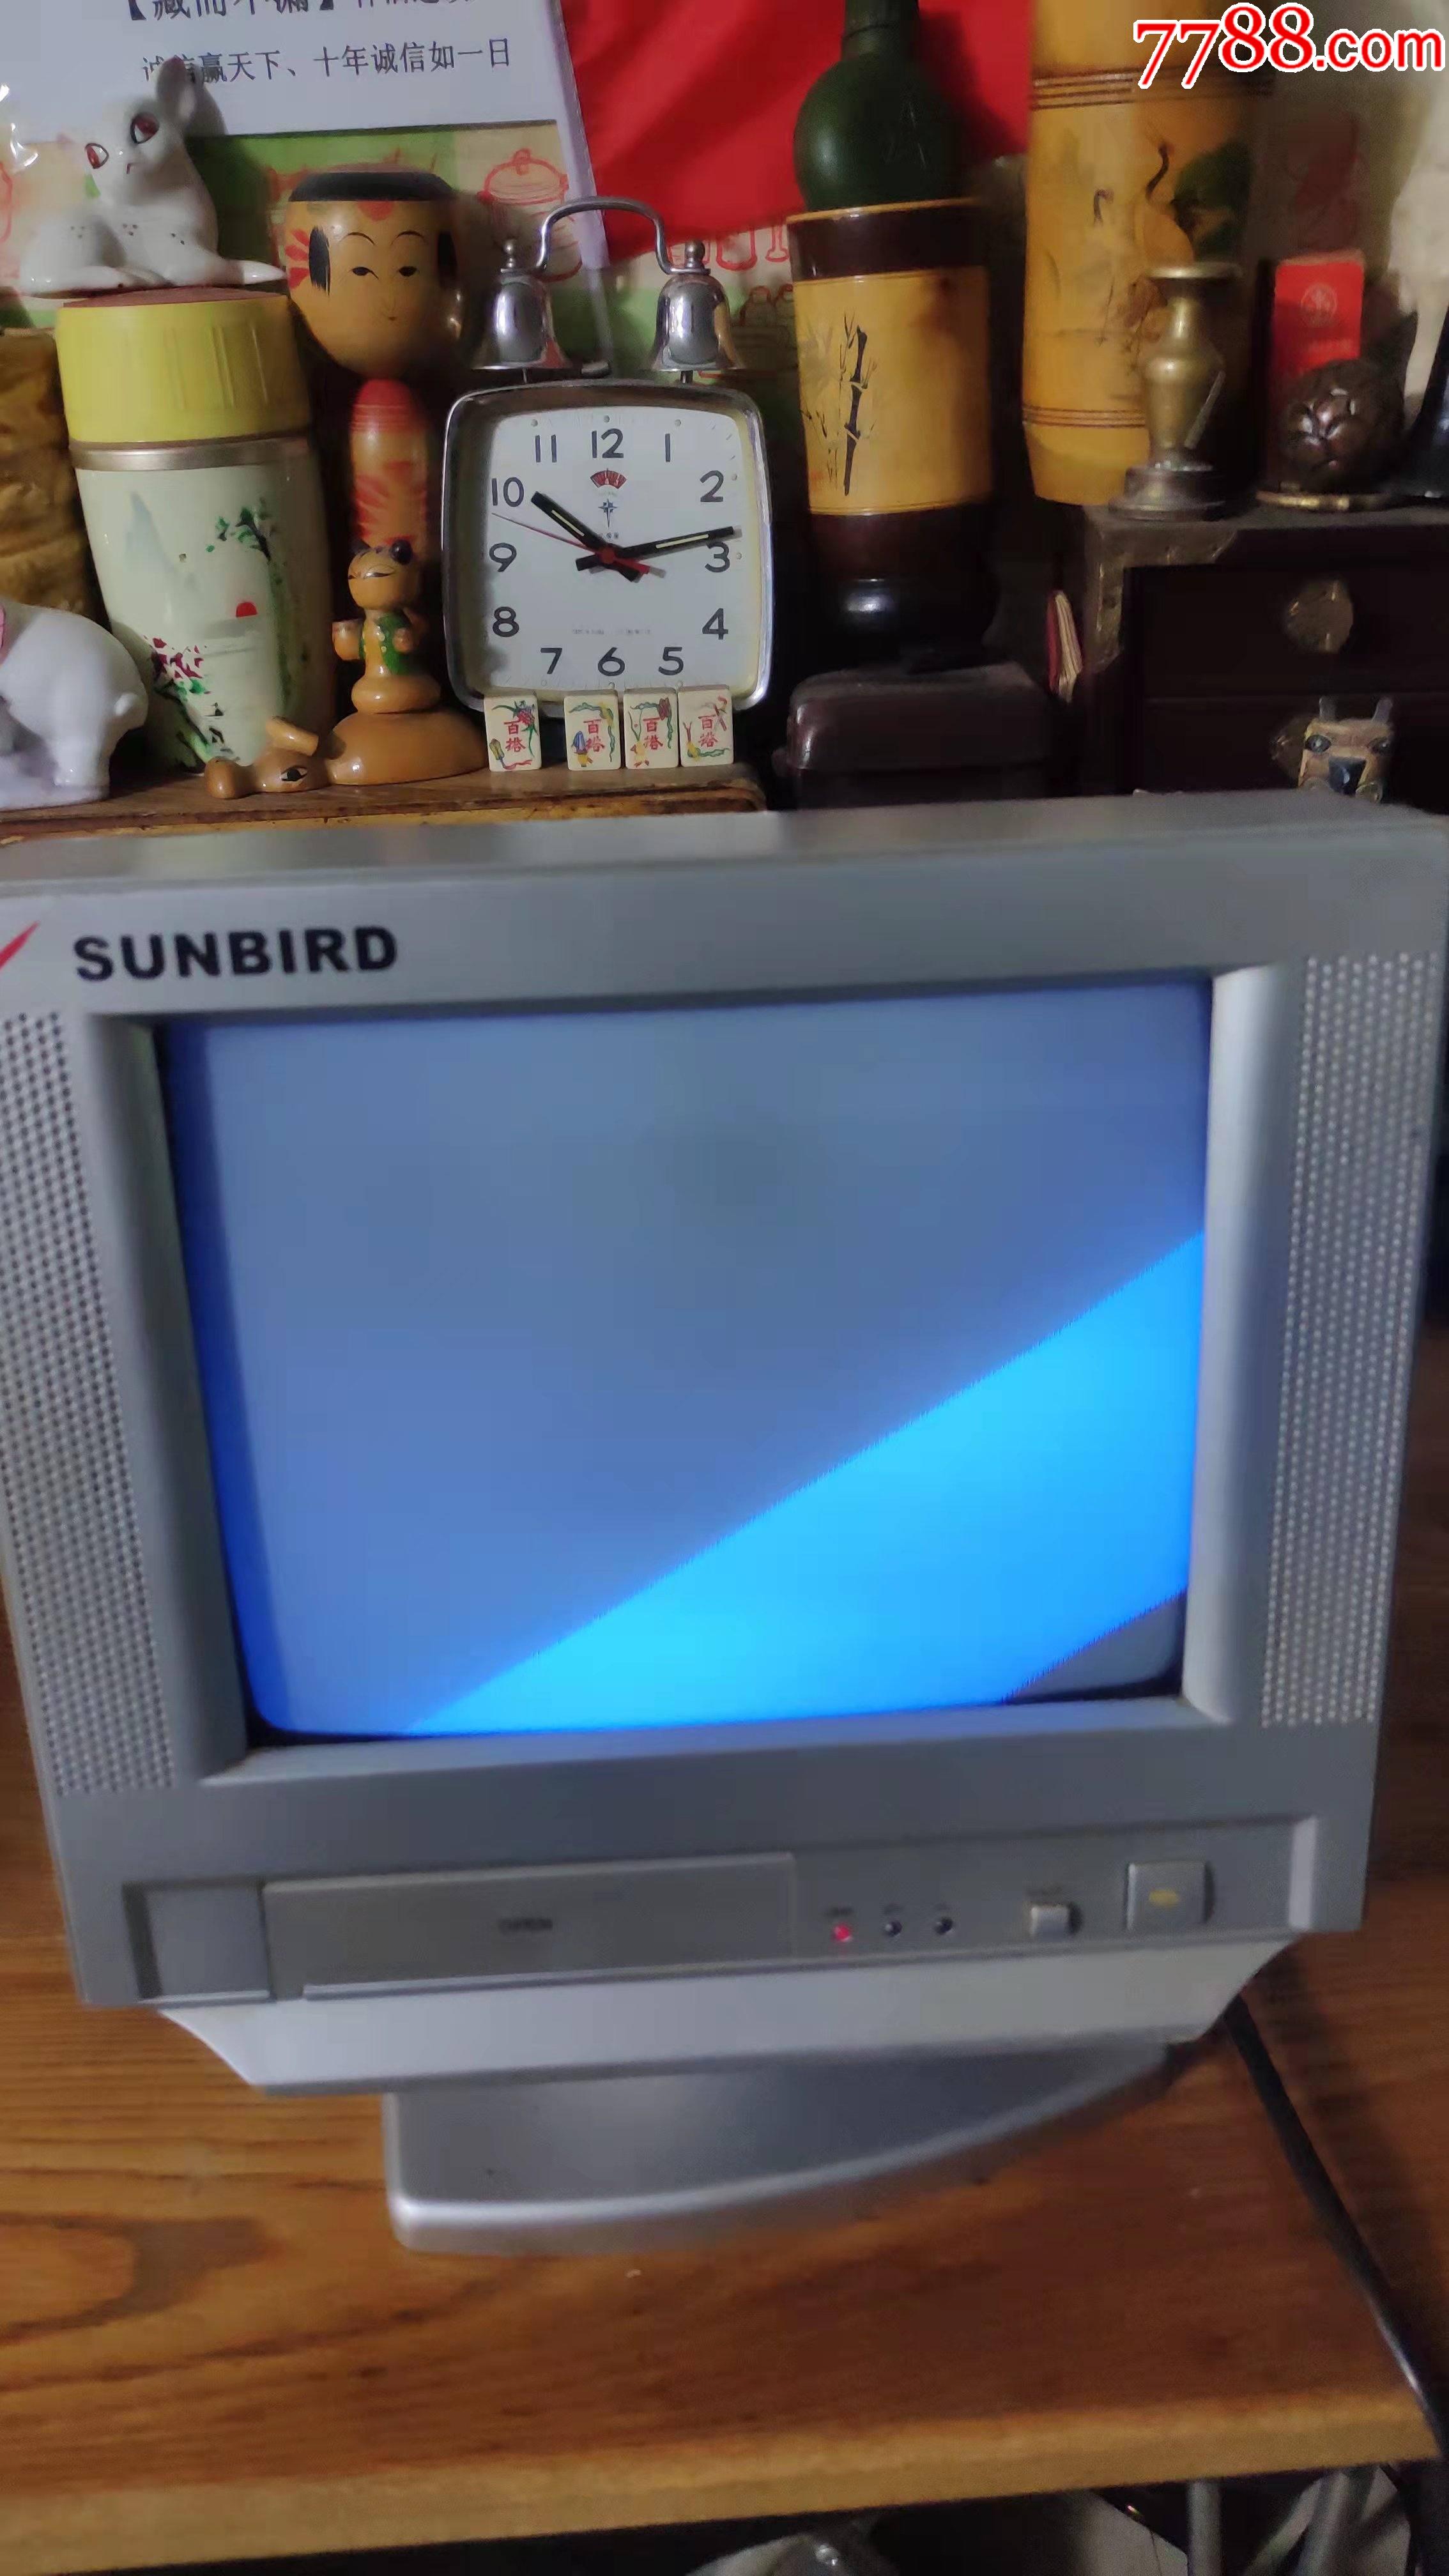 上世纪90年代太阳鸟牌黑白老式袖珍小电视怀旧民俗老家电